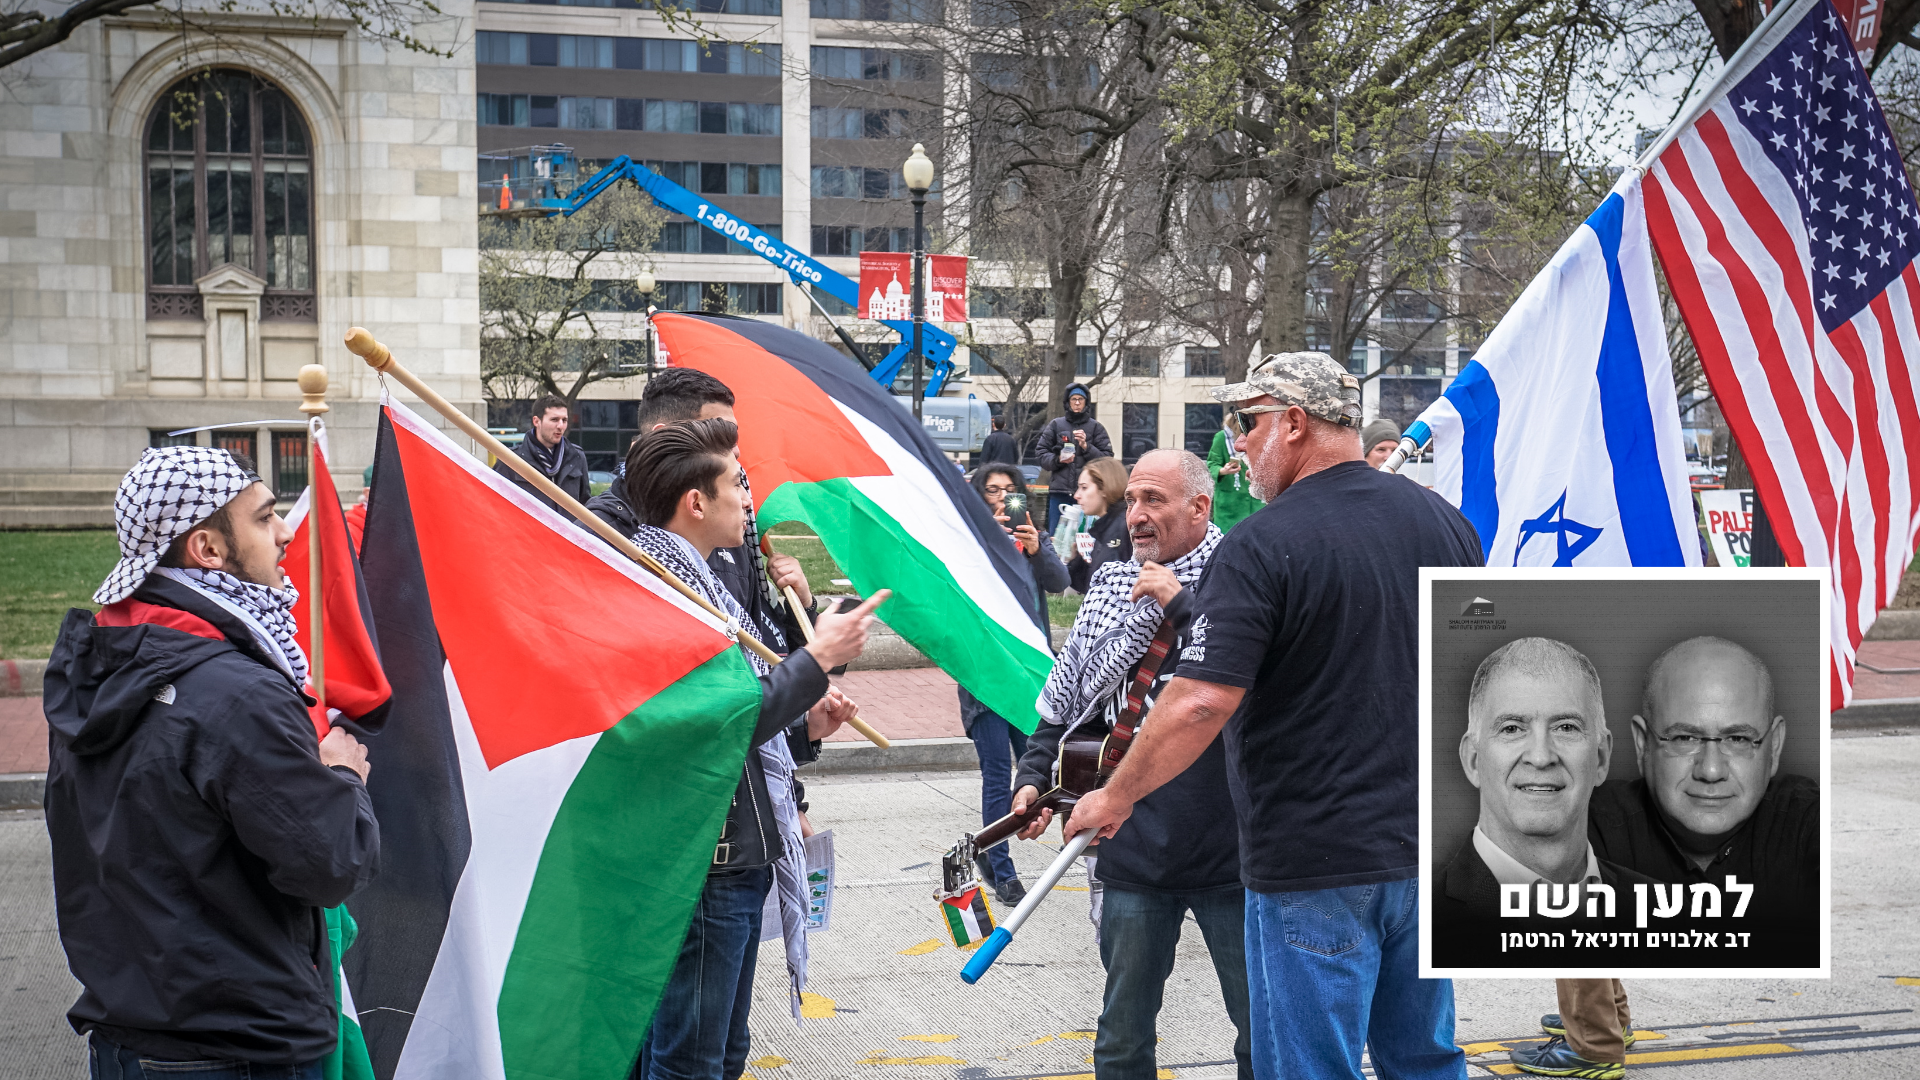 שילוב של כוחות קיצוניים. הפגנה נגד ישראל בוושינגטון (צילום: טד איתן, מתוך ויקיפדיה)